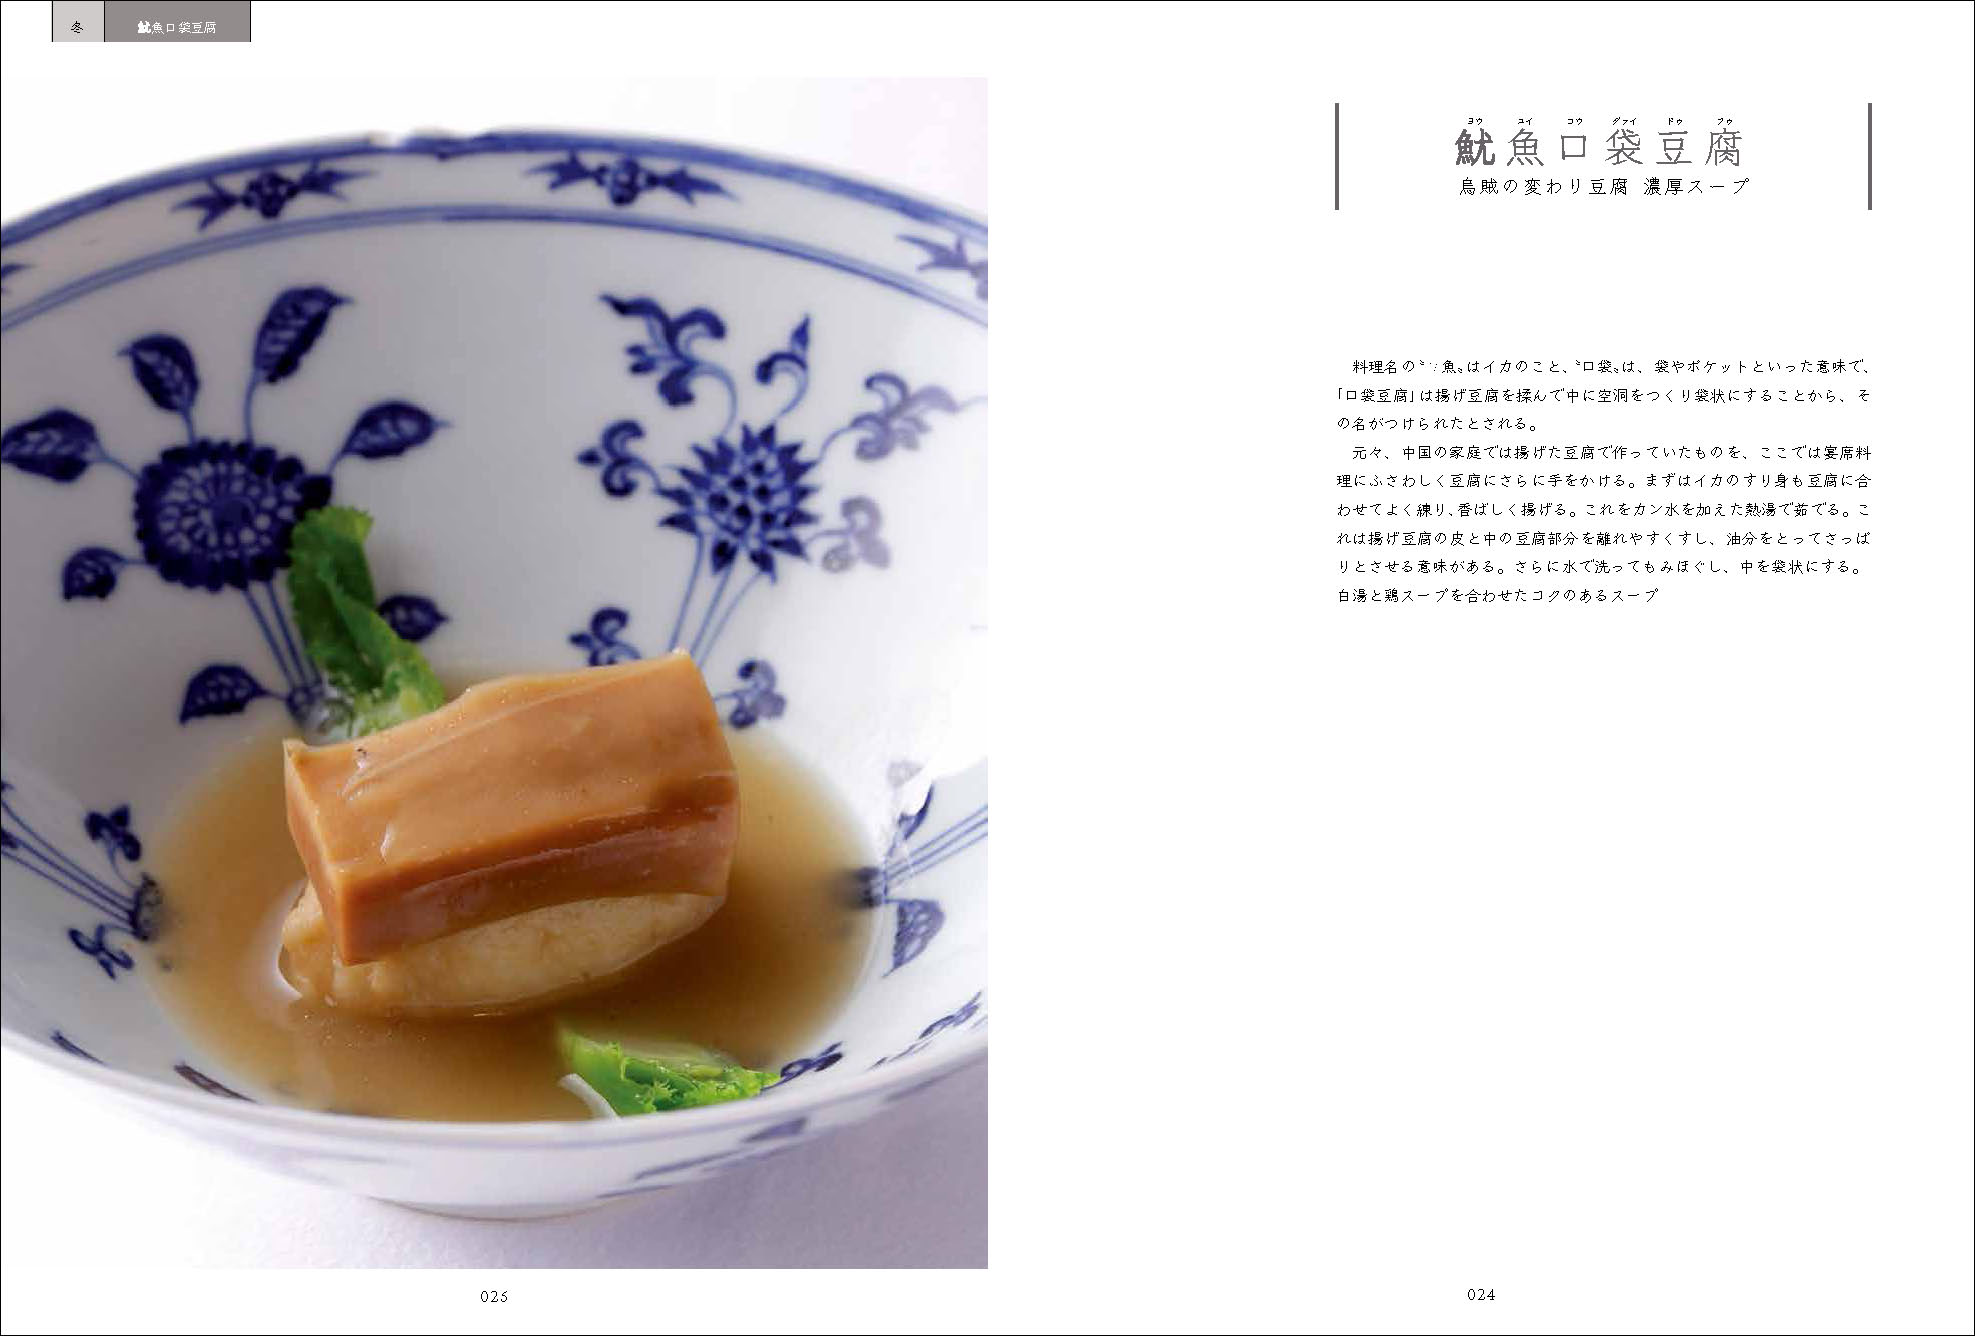 現代に生きる 老四川 伝統四川料理を現代の技で継承する | 旭屋出版